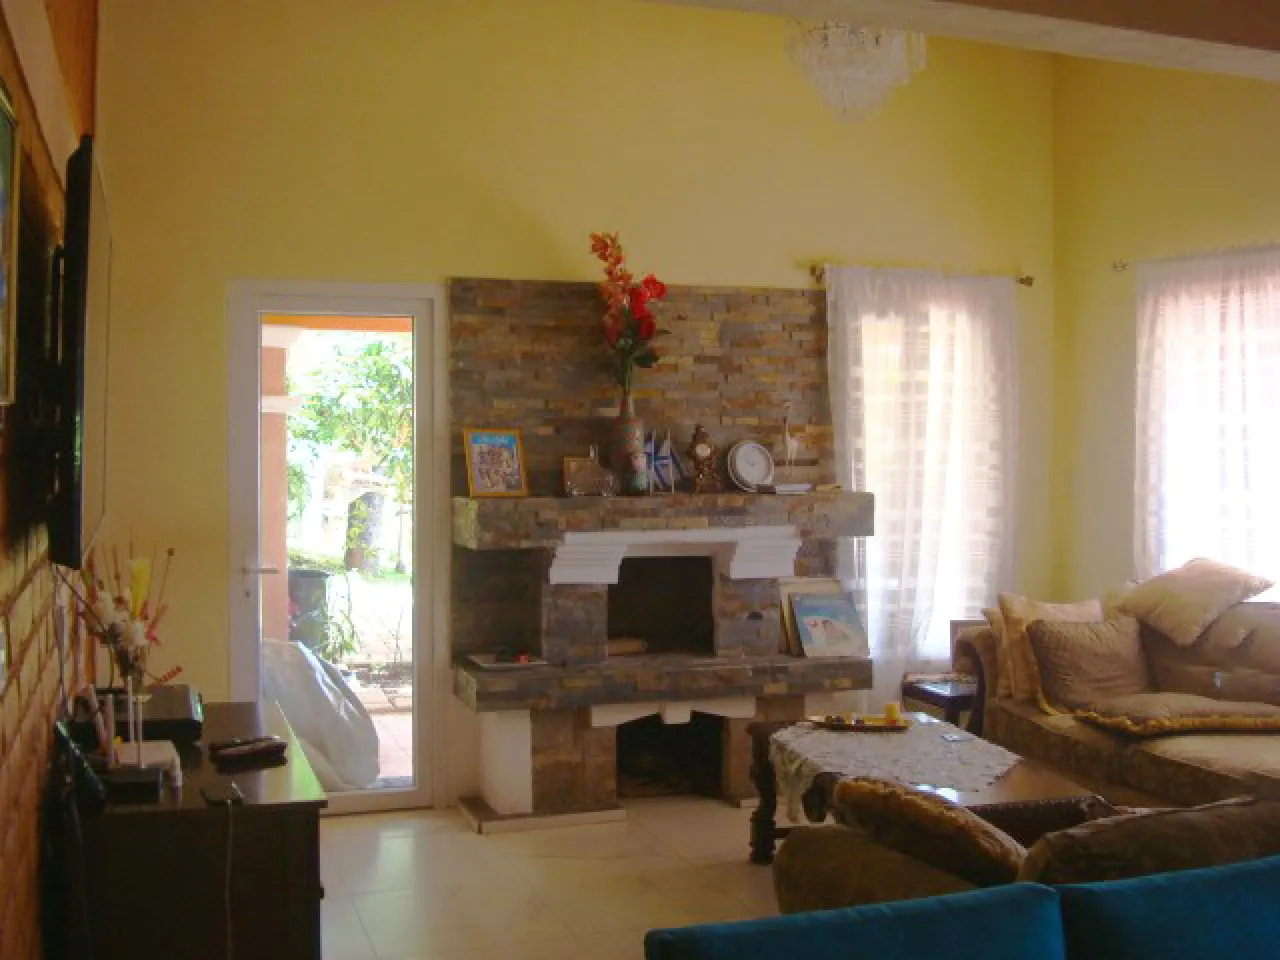 sala de estar cuenta con paredes de color amarillo, chimenea de ladrill, suelo de porcelanato, sillones de color café.